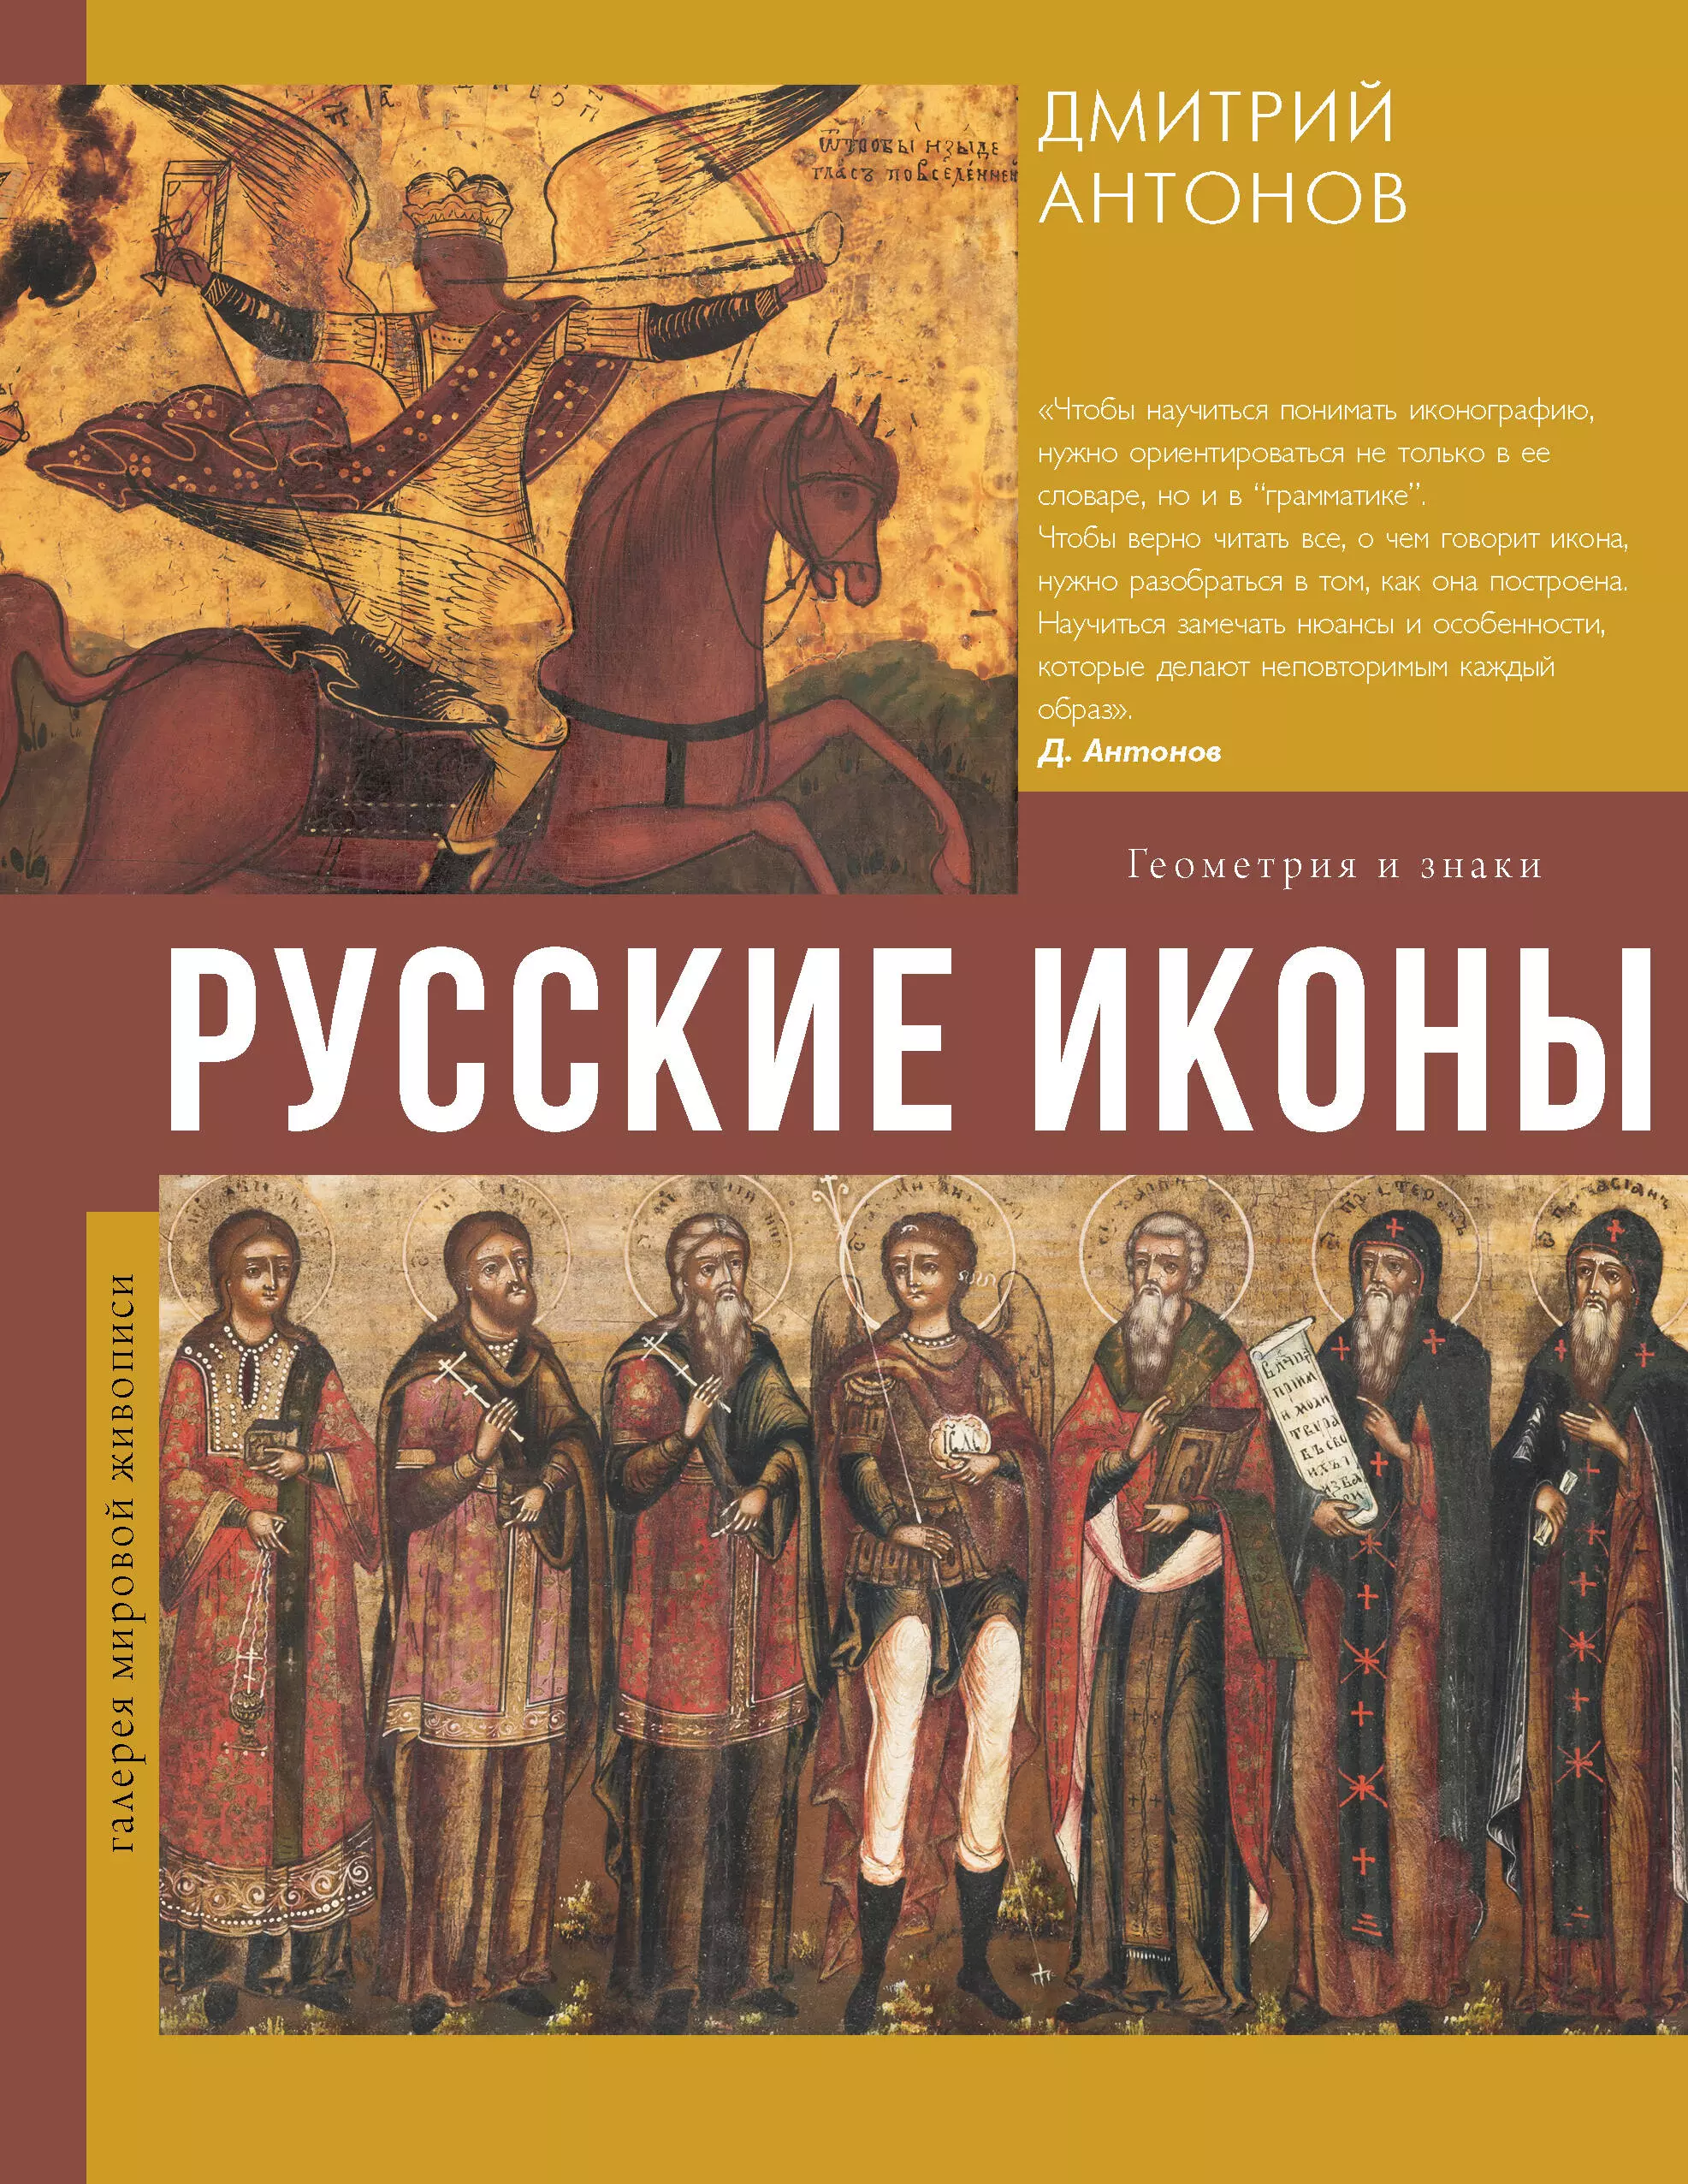 Русские иконы: геометрия и знаки богоматерь владимирская русские иконы комплект открыток